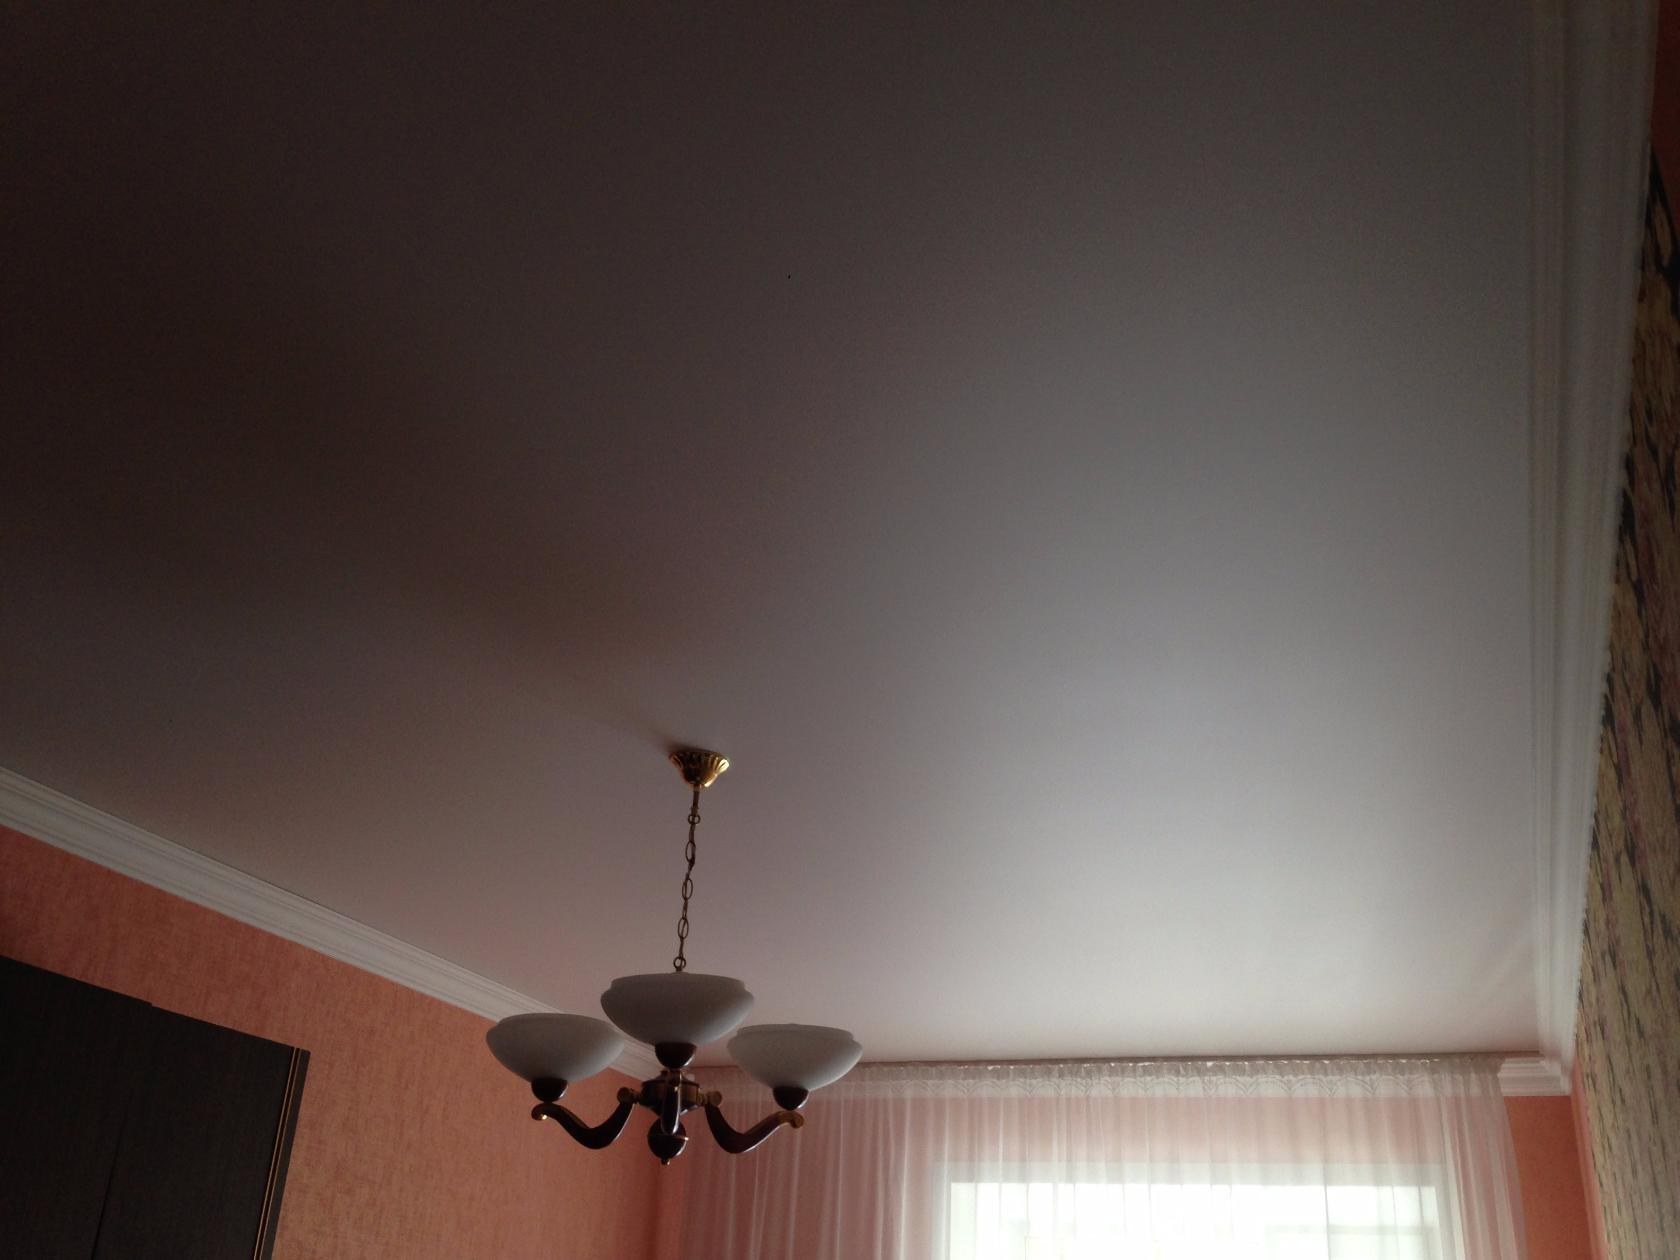 Сатиновые или матовые натяжные потолки - разница между полотнами.